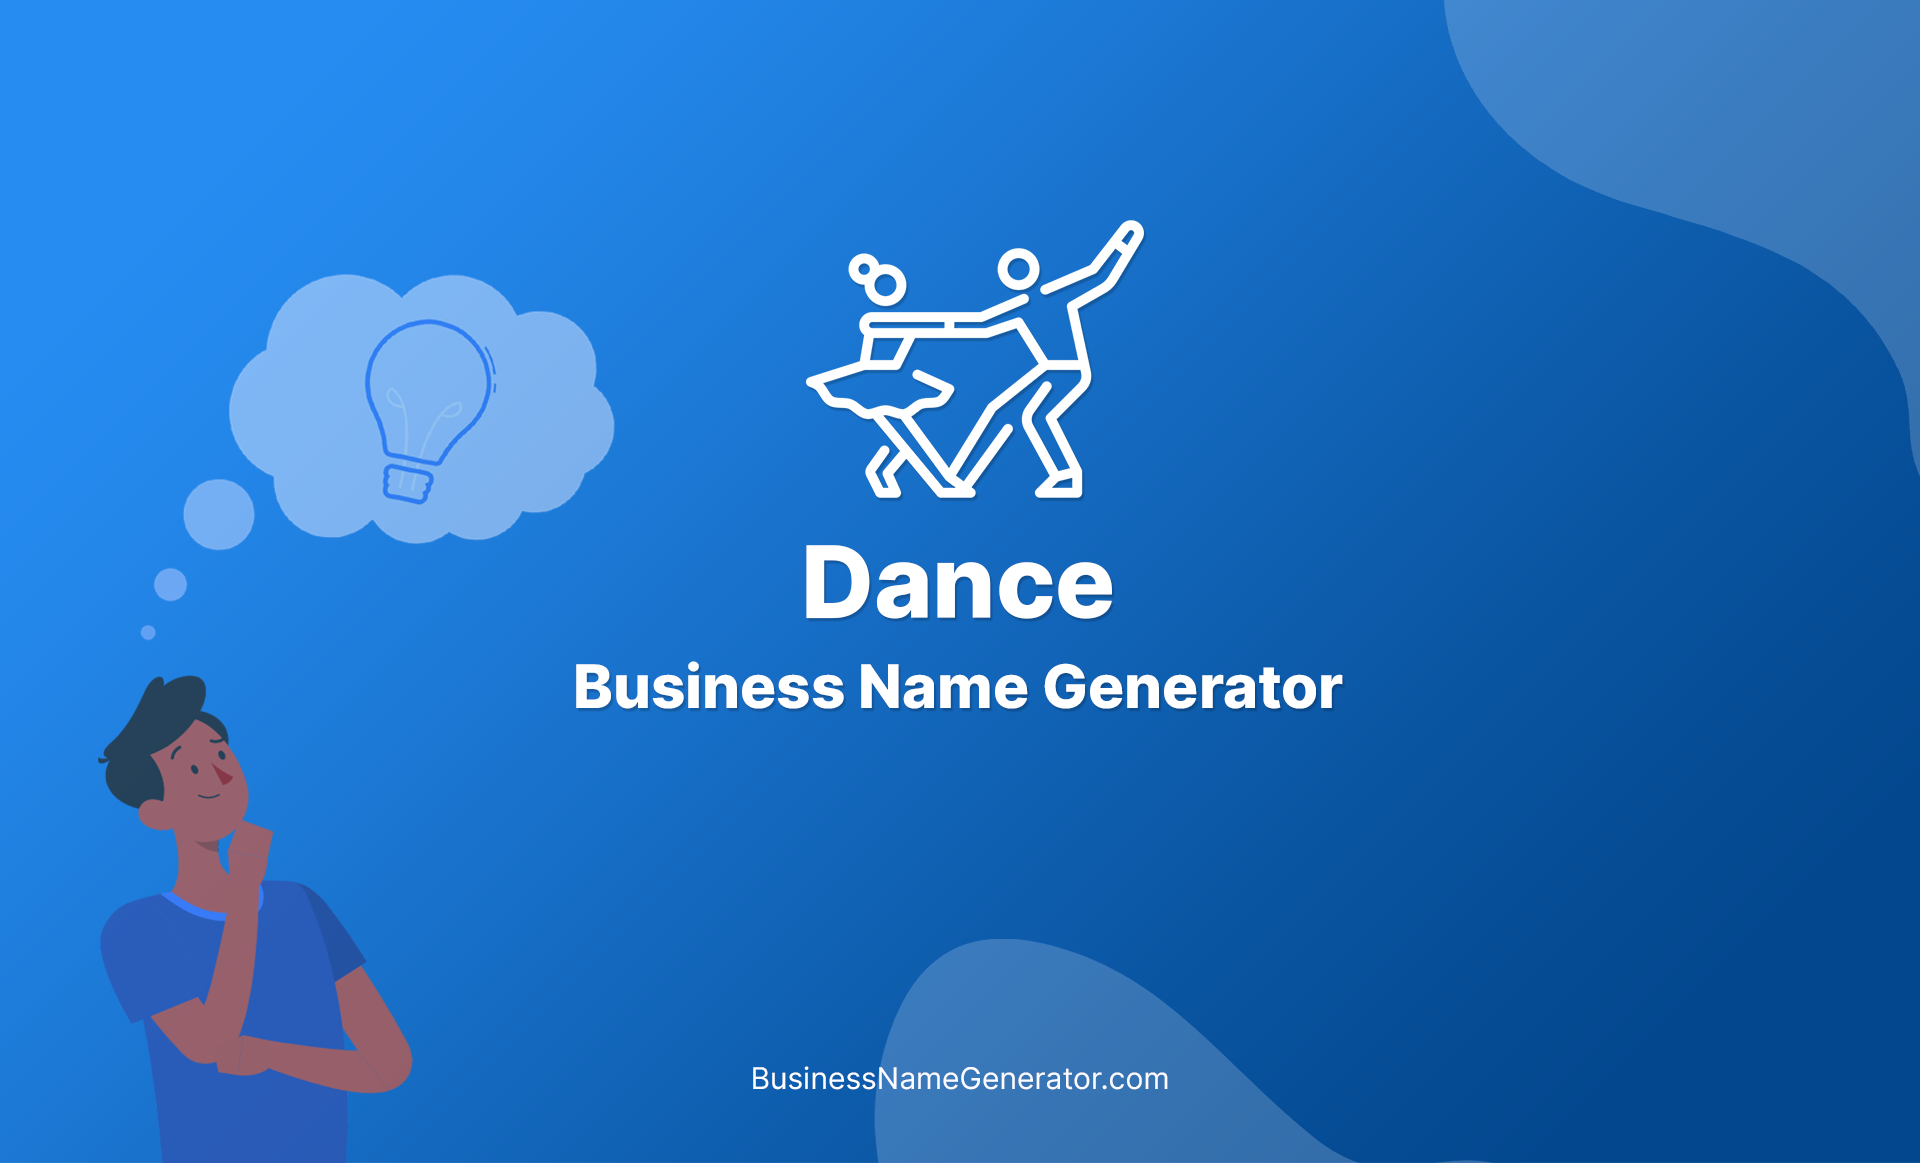 Dance Business Name Generator